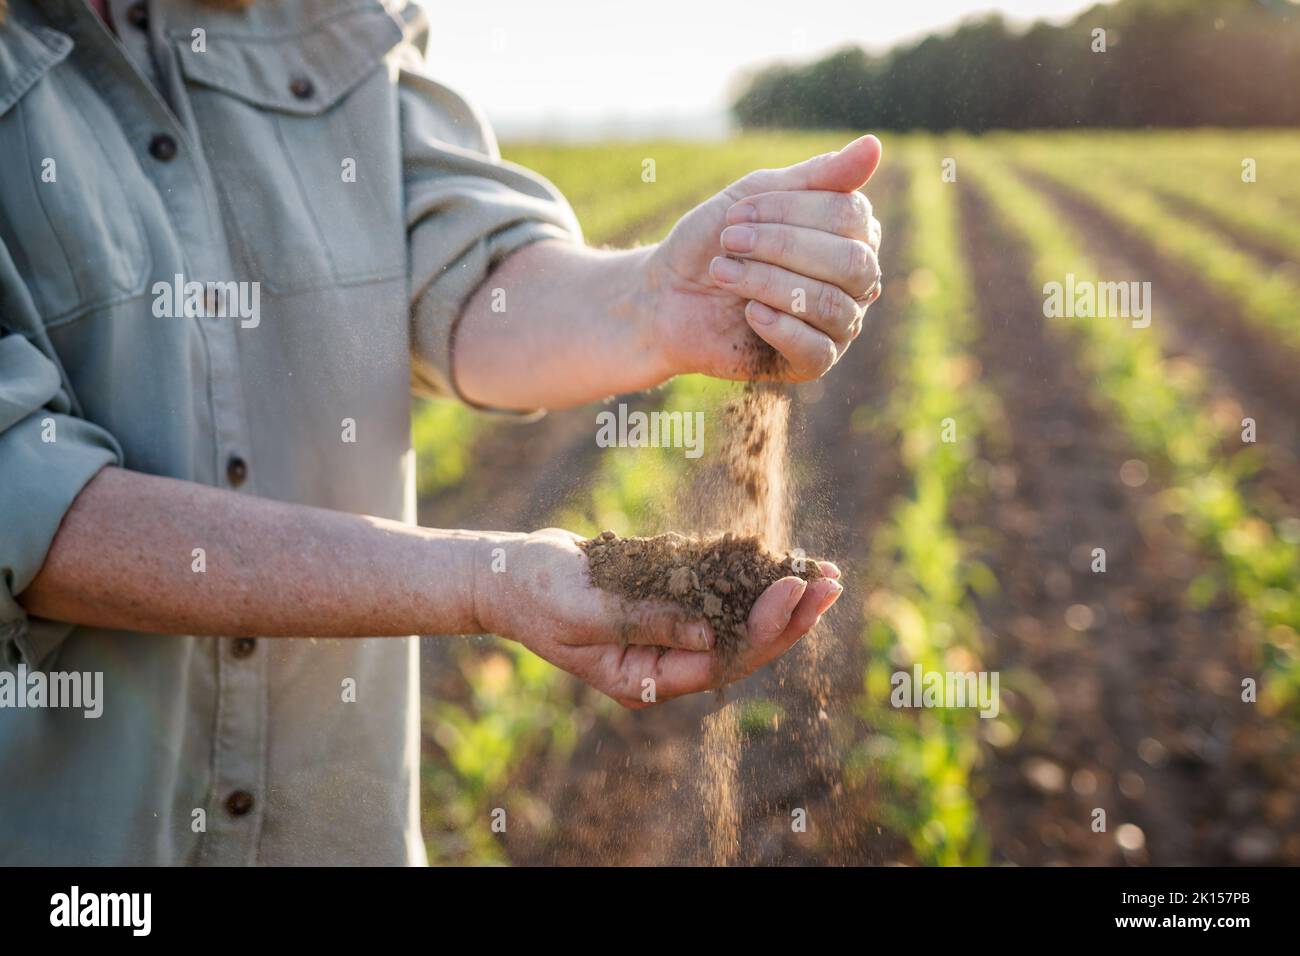 Sécheresse dans le domaine agricole. Agriculteur tenant le sol sec entre les mains et contrôlant la qualité de la fertilité au climat aride. Agriculture et terres cultivées Banque D'Images